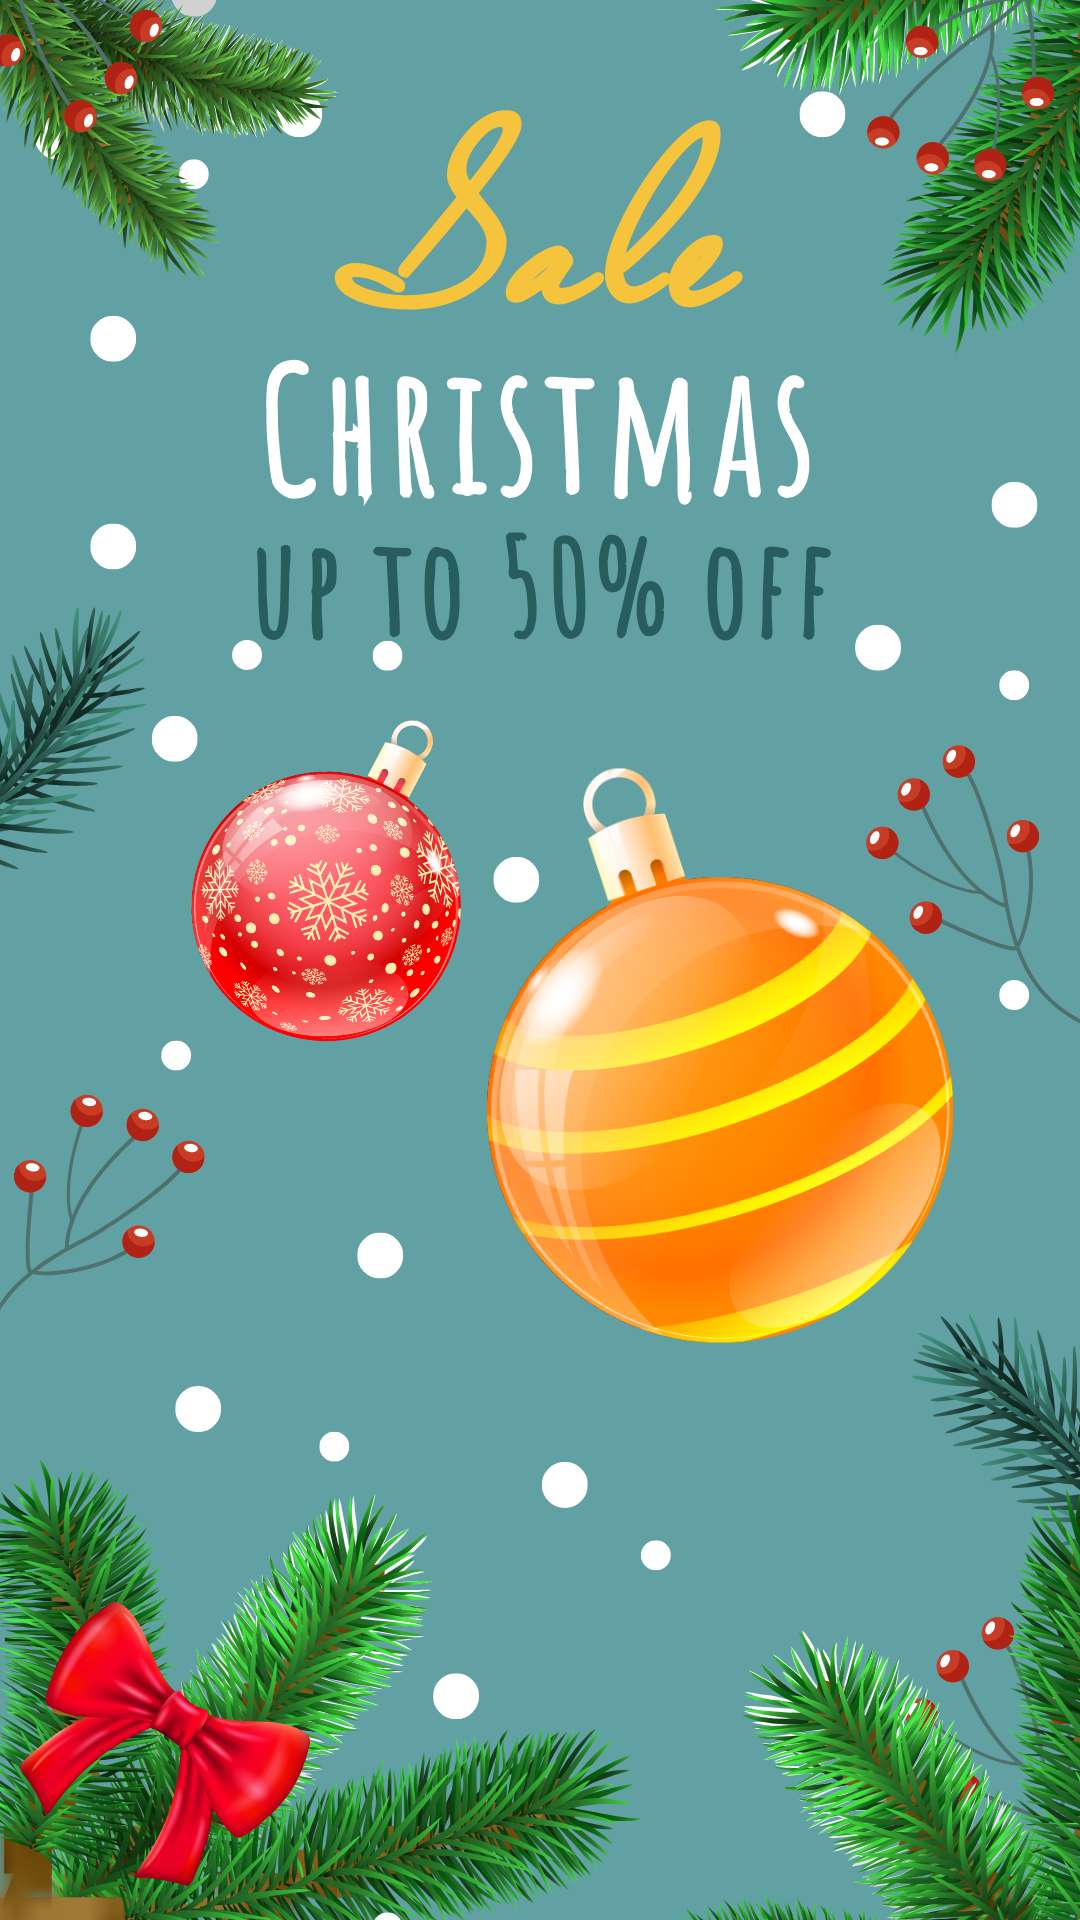 Рождественский сторис с красивыми шарами на бирюзовом фоне и скидкой 50%